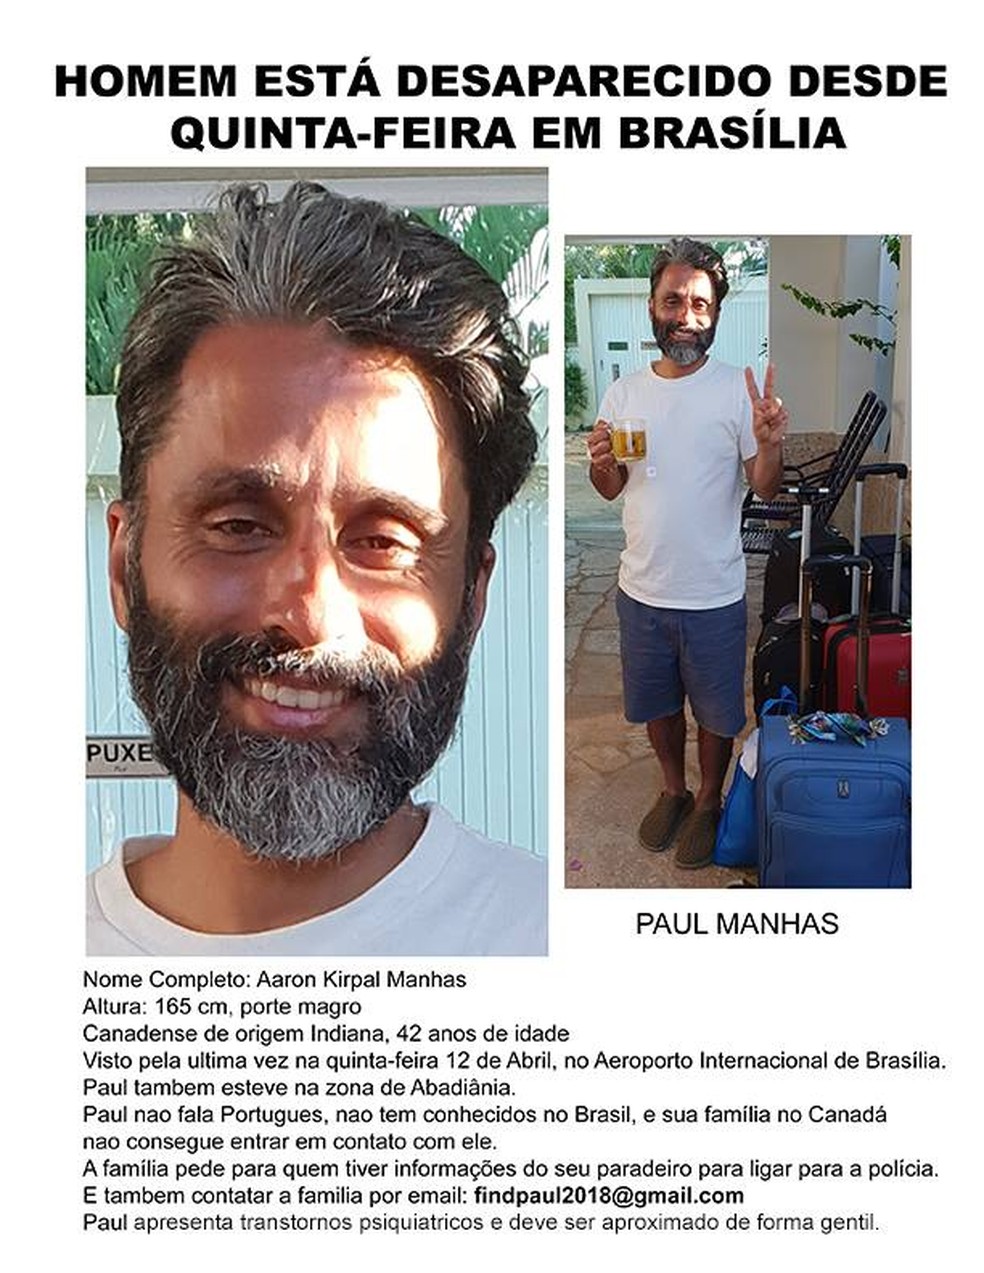 PÃ´ster em portuguÃªs com informaÃ§Ãµes sobre o canadense desaparecido em BrasÃ­lia (Foto: Arquivo pessoal/ReproduÃ§Ã£o)